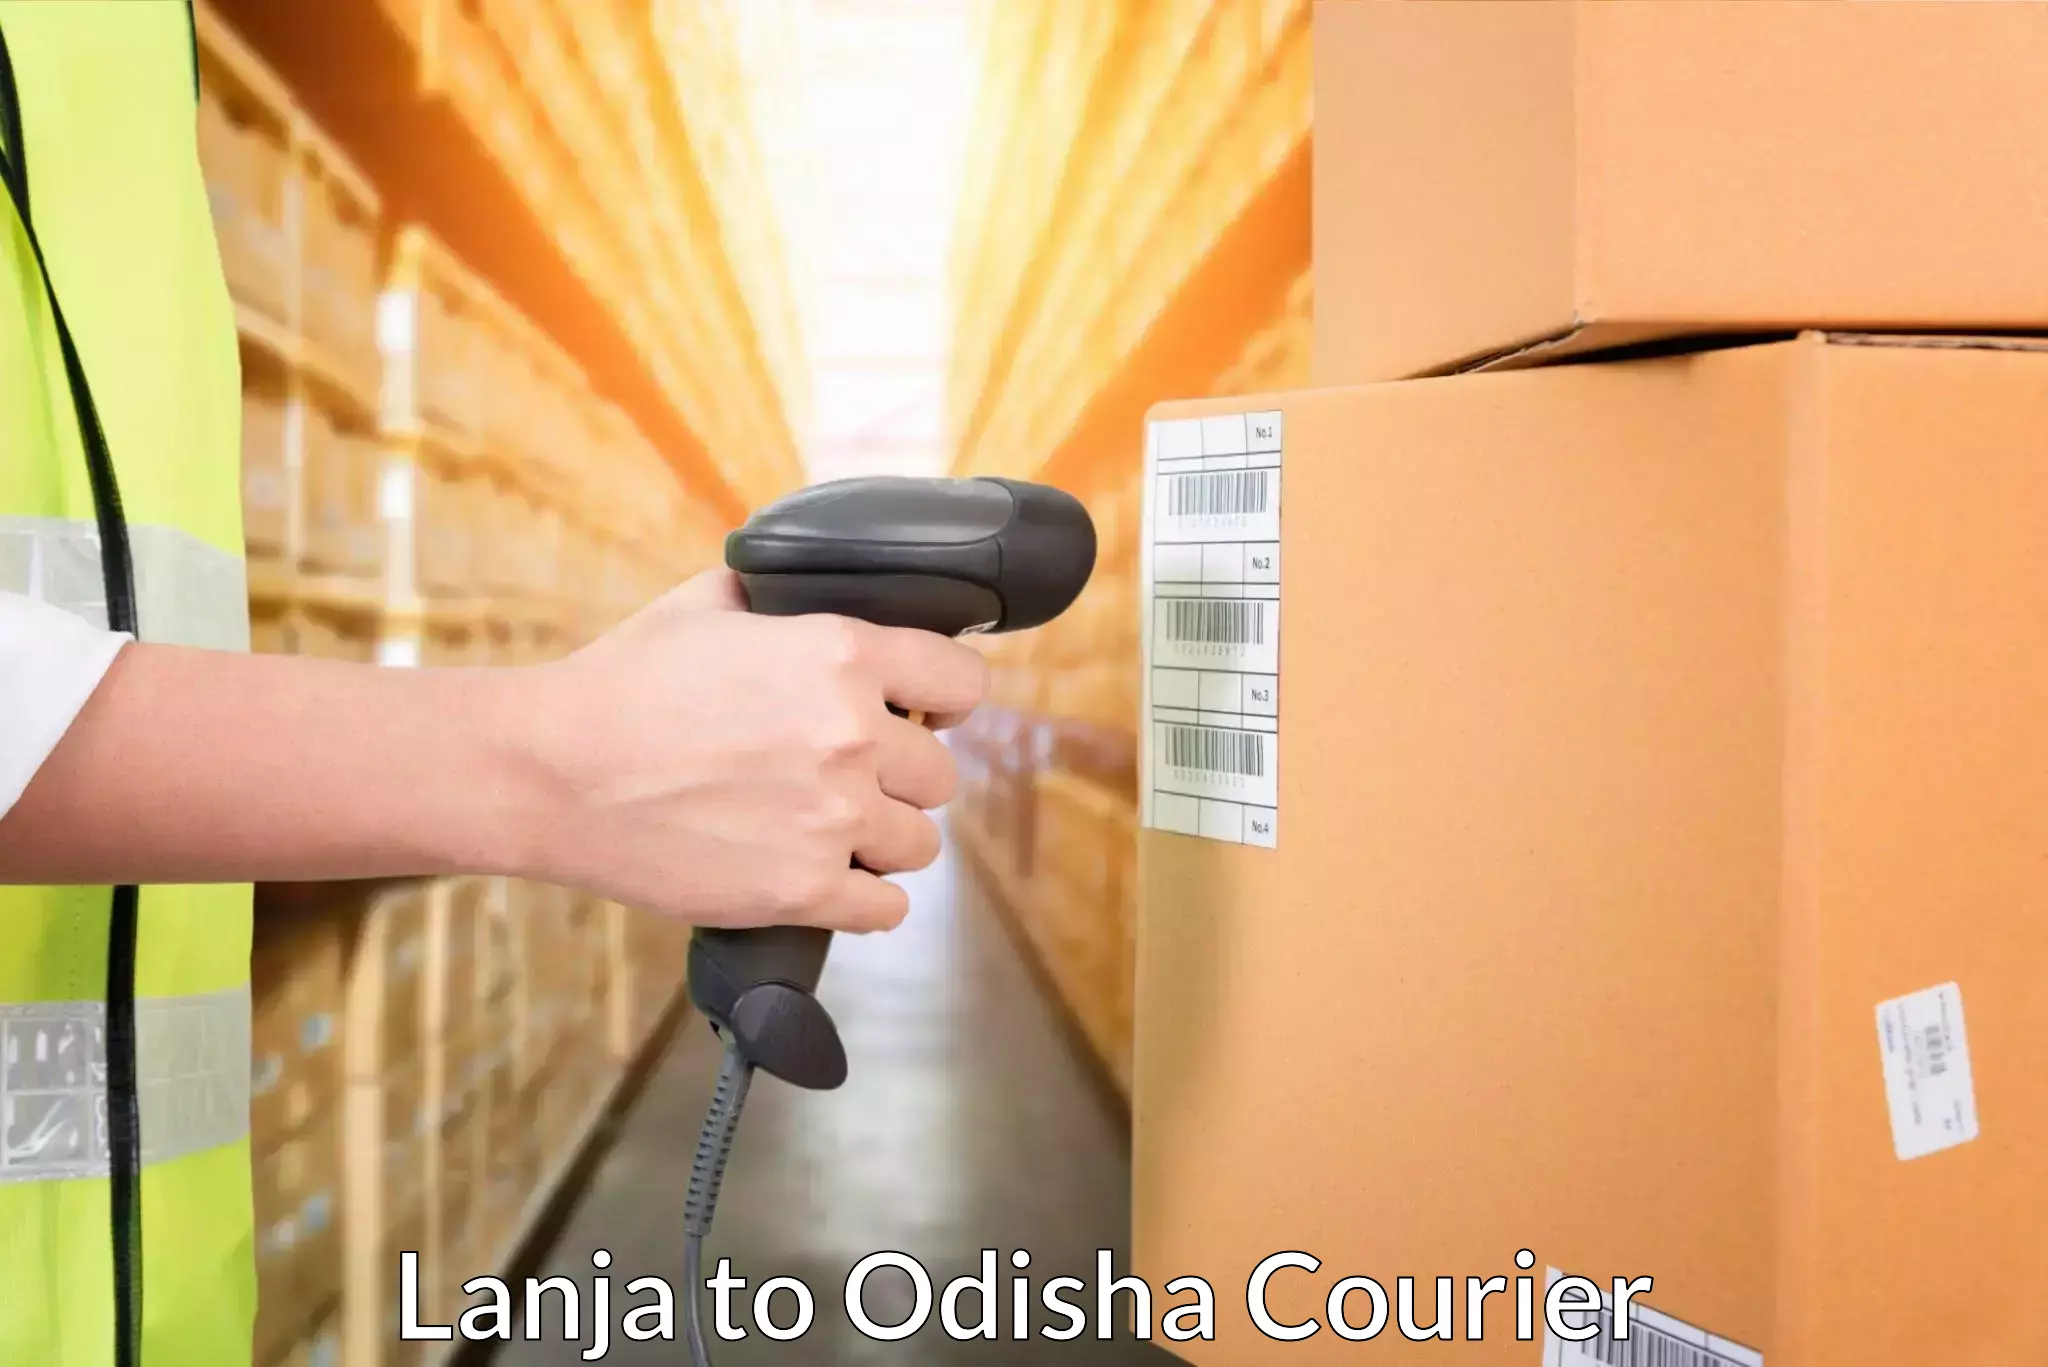 24/7 courier service Lanja to Sankerko